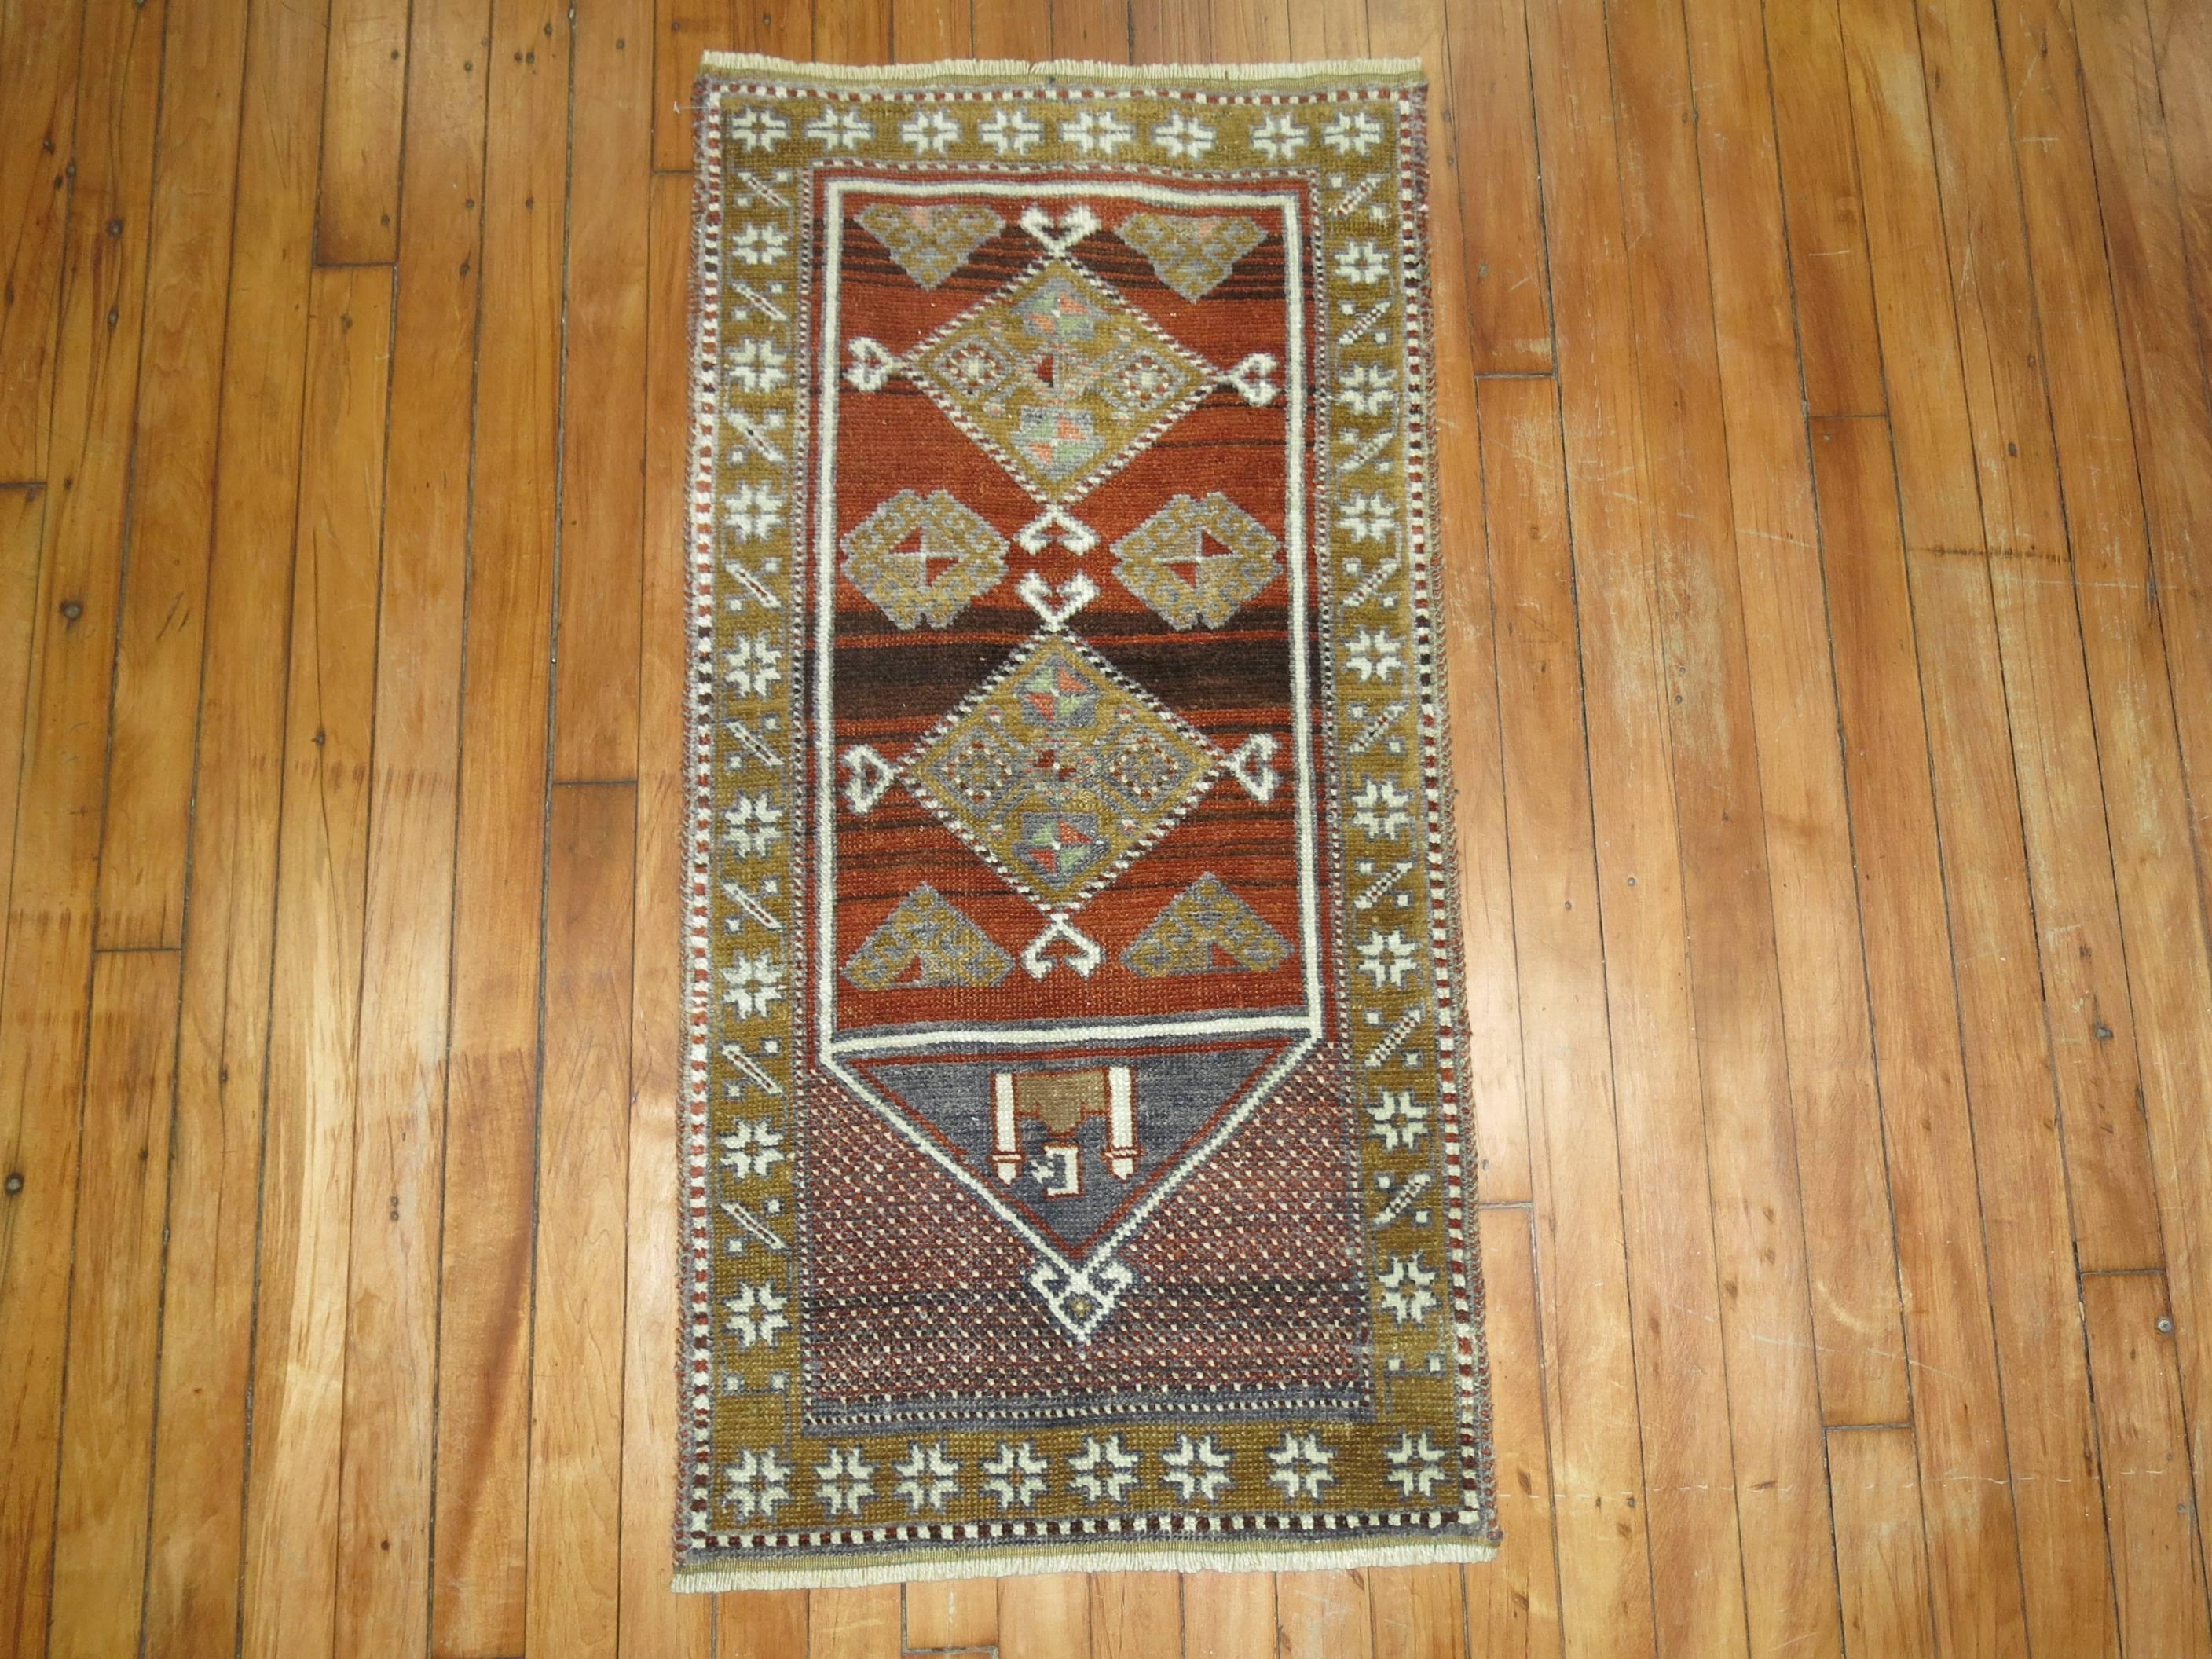 Vintage Turkish Anatolian throw rug with prayer niche motif.